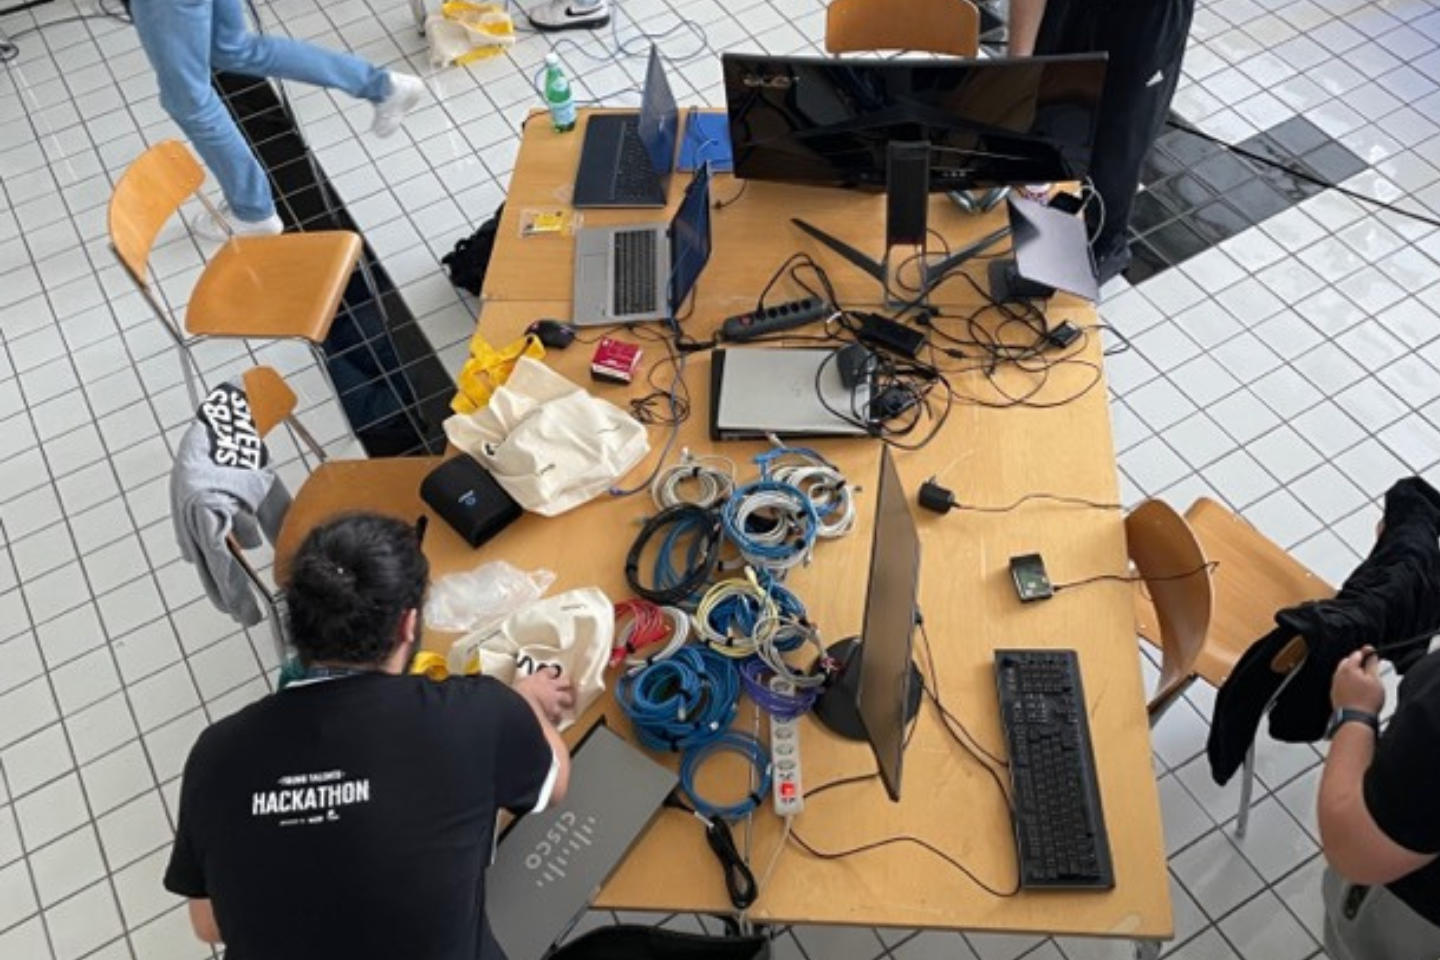 Teilnehmer am 'Young Talents Hackathon' in der Schweiz arbeiten an einem voll ausgestatteten Entwicklertisch mit Laptops und Elektronikbauteilen.